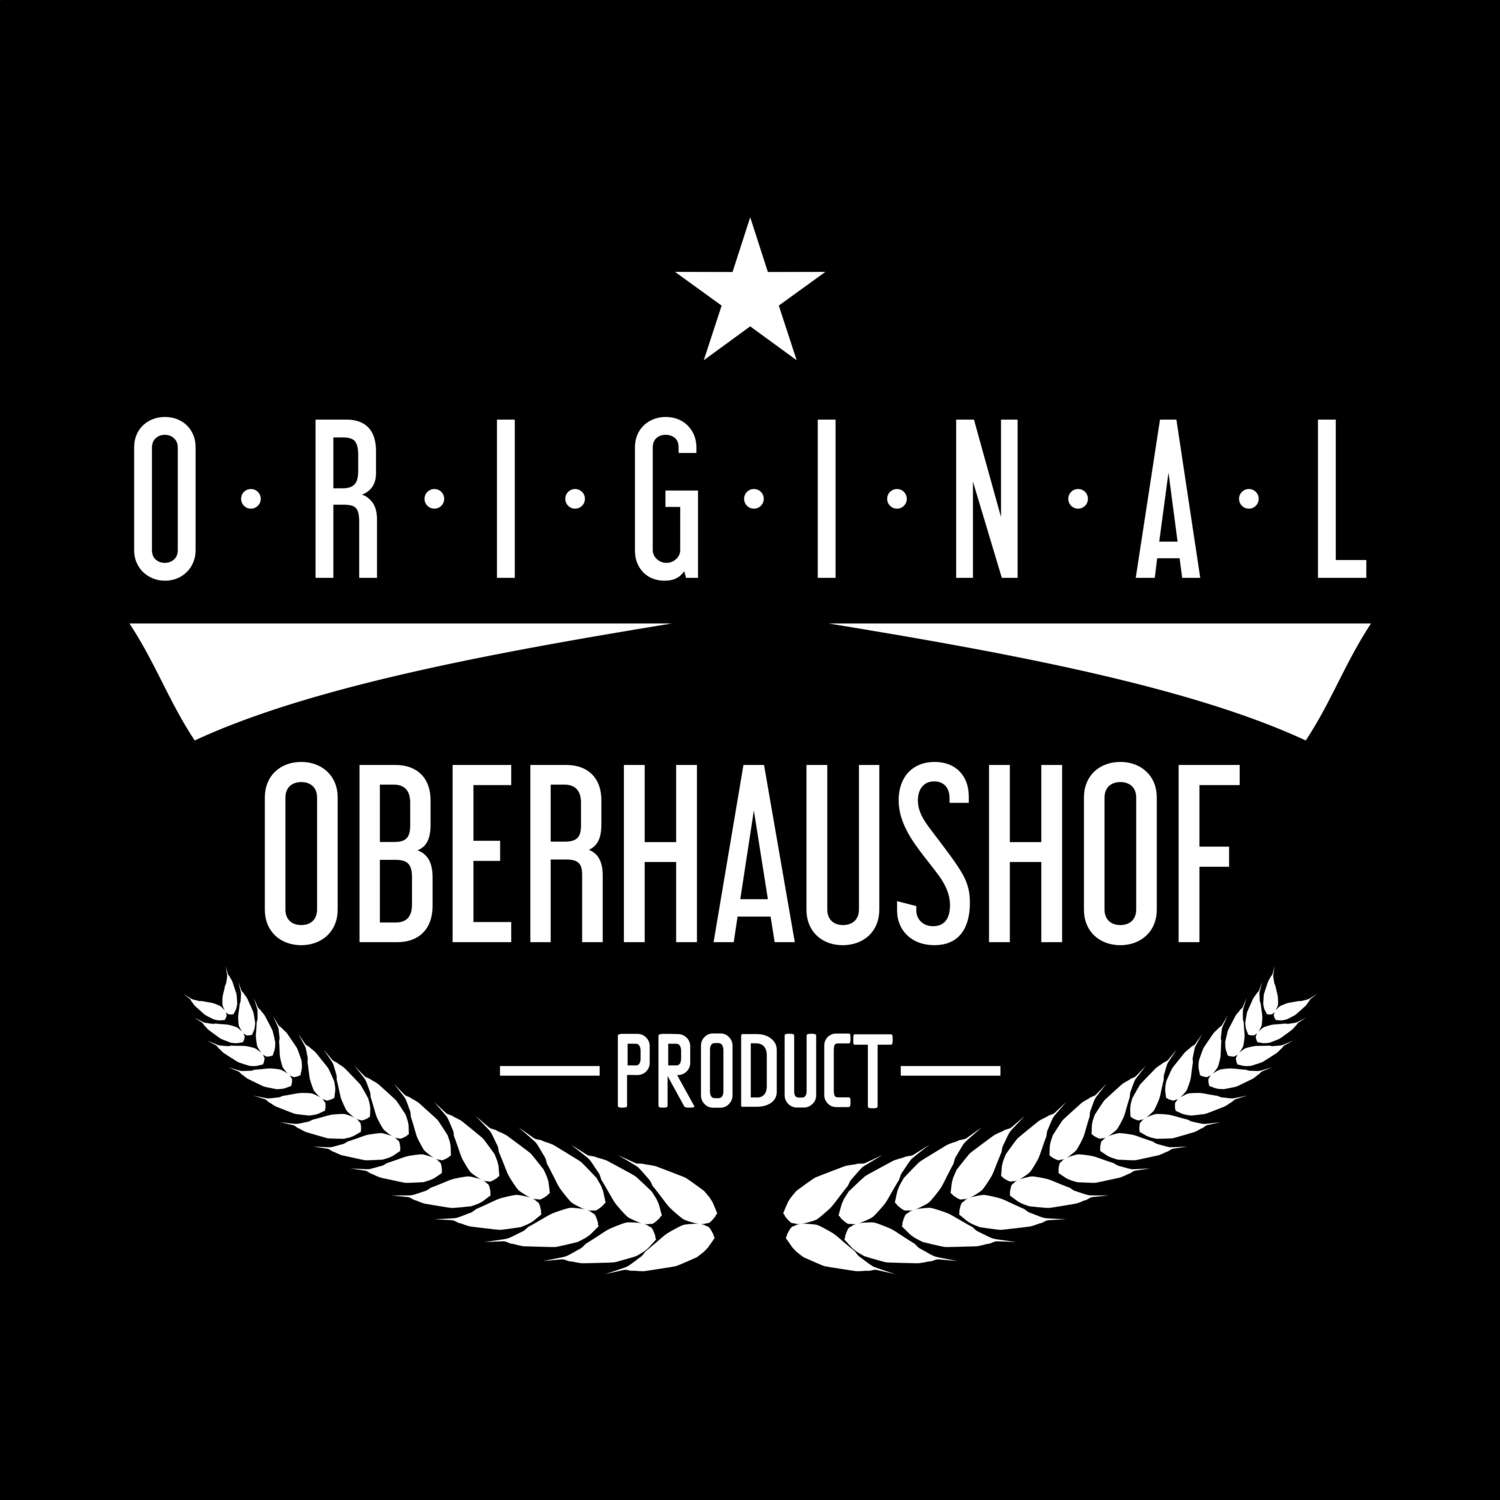 Oberhaushof T-Shirt »Original Product«